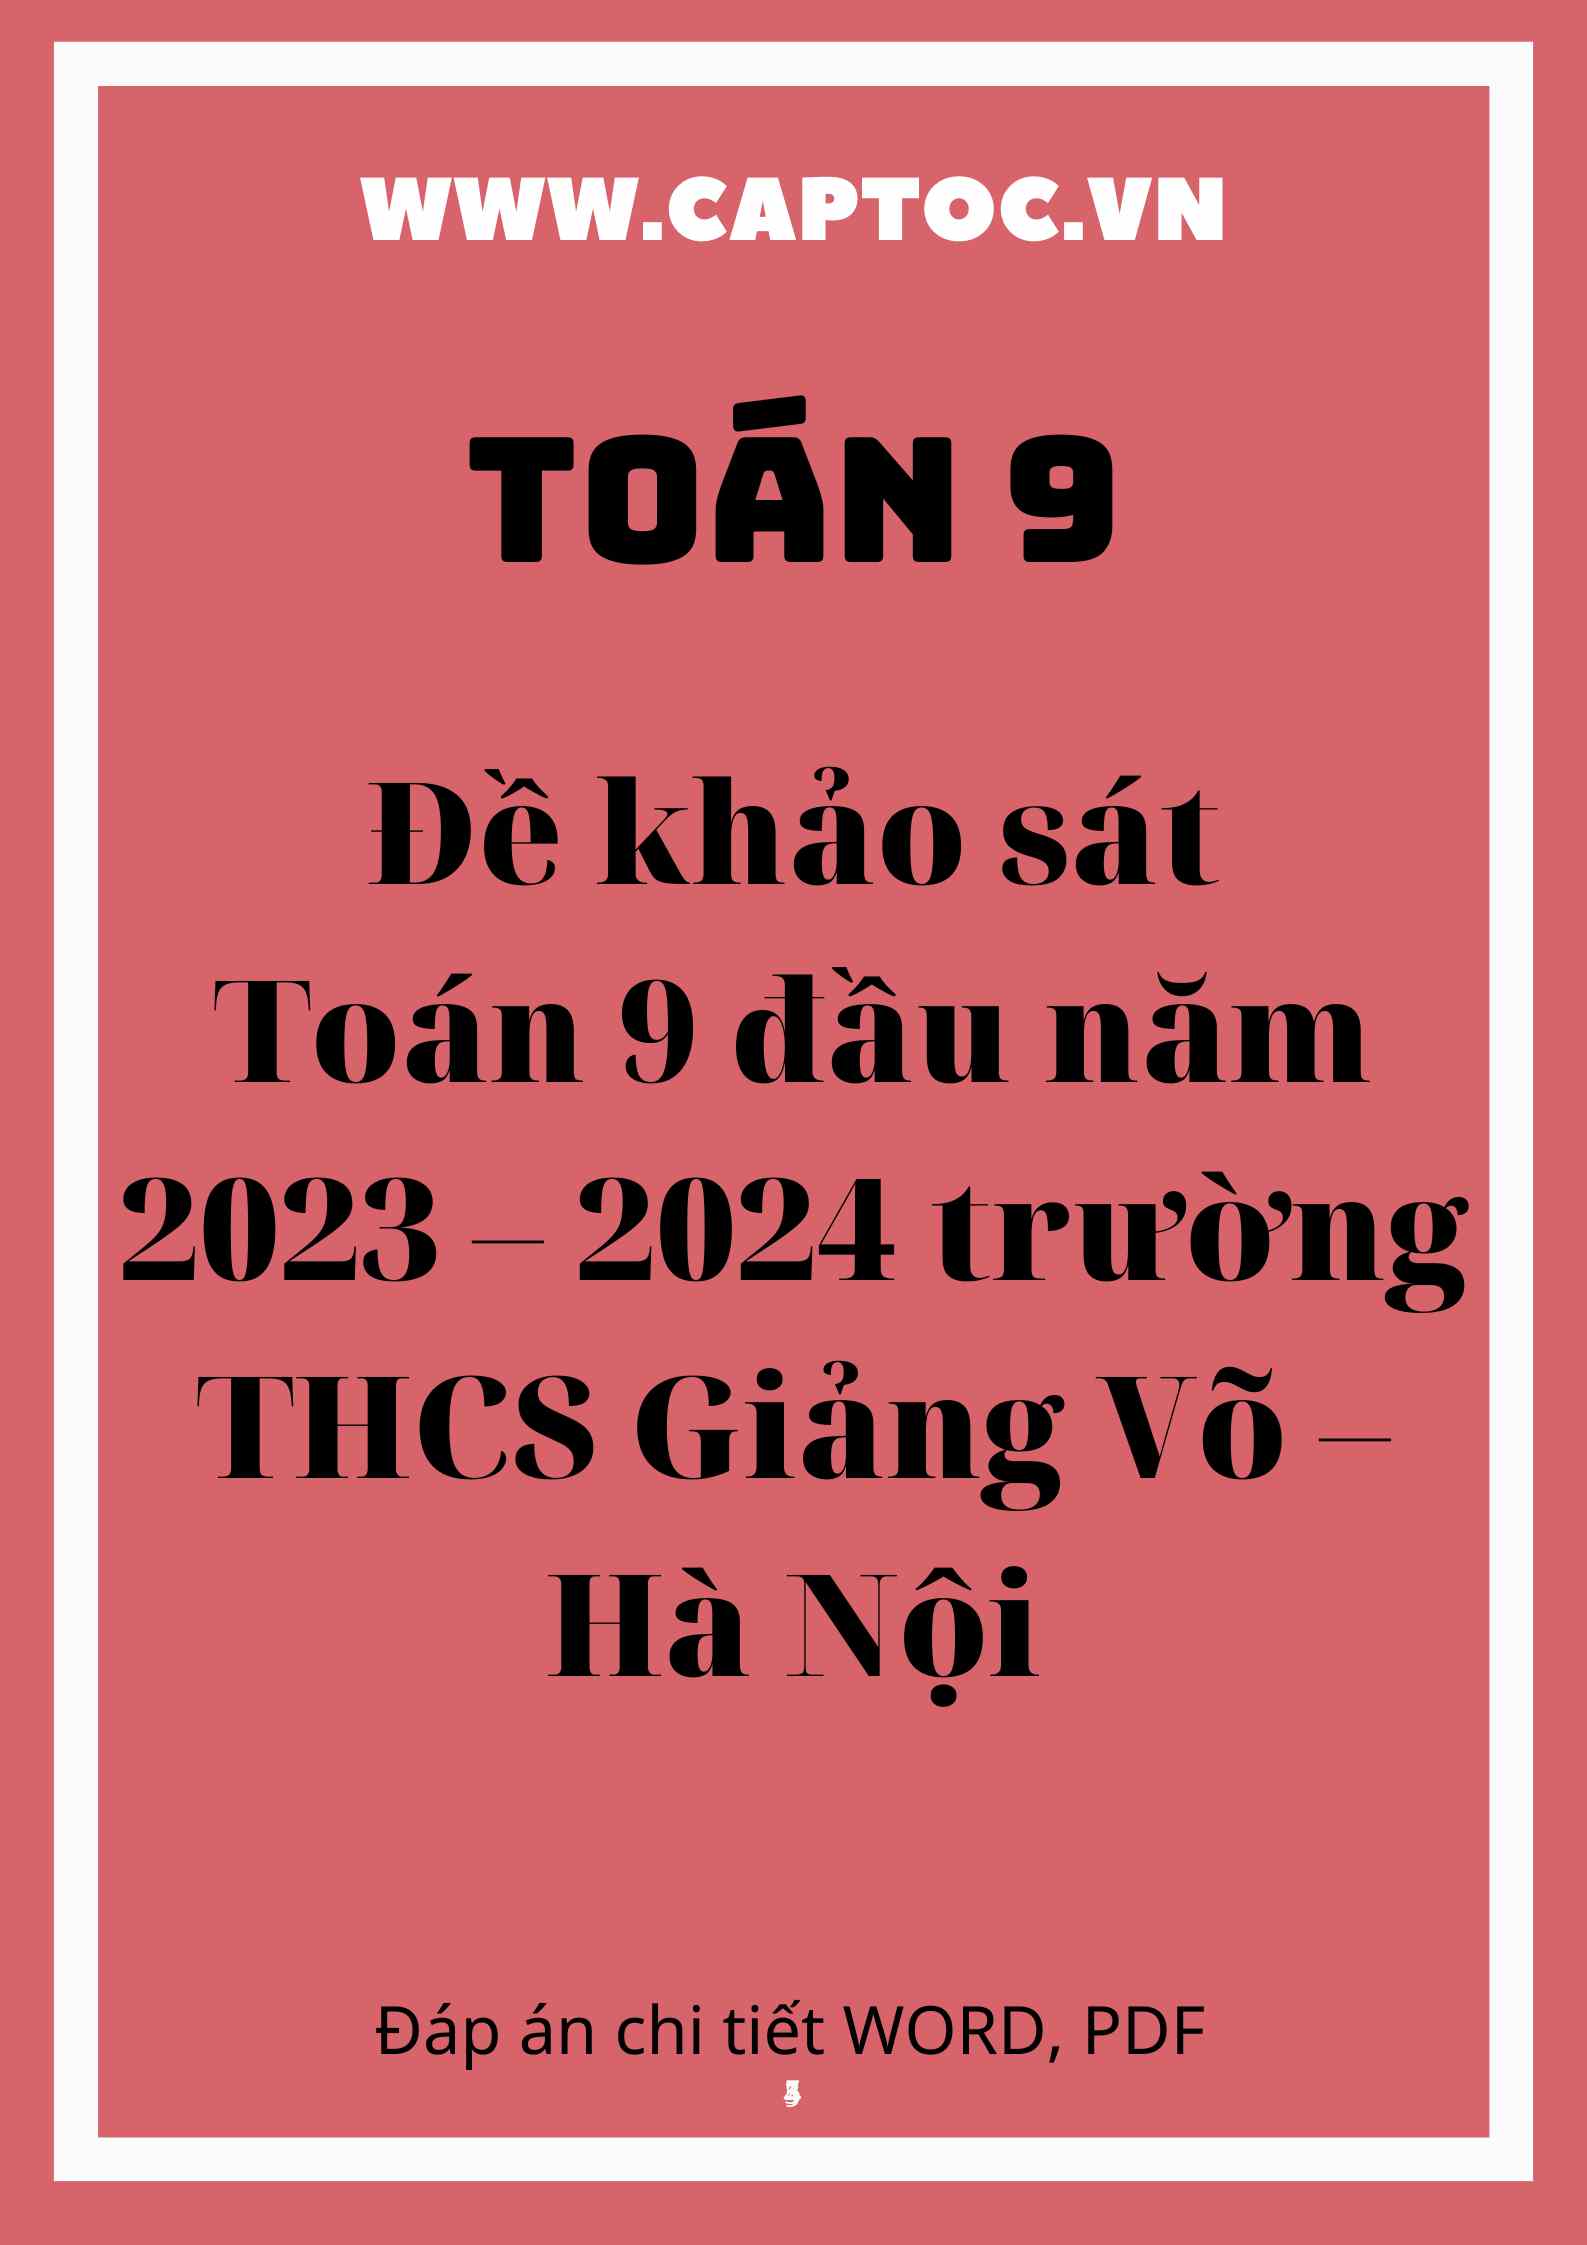 Đề khảo sát Toán 9 đầu năm 2023 – 2024 trường THCS Giảng Võ – Hà Nội